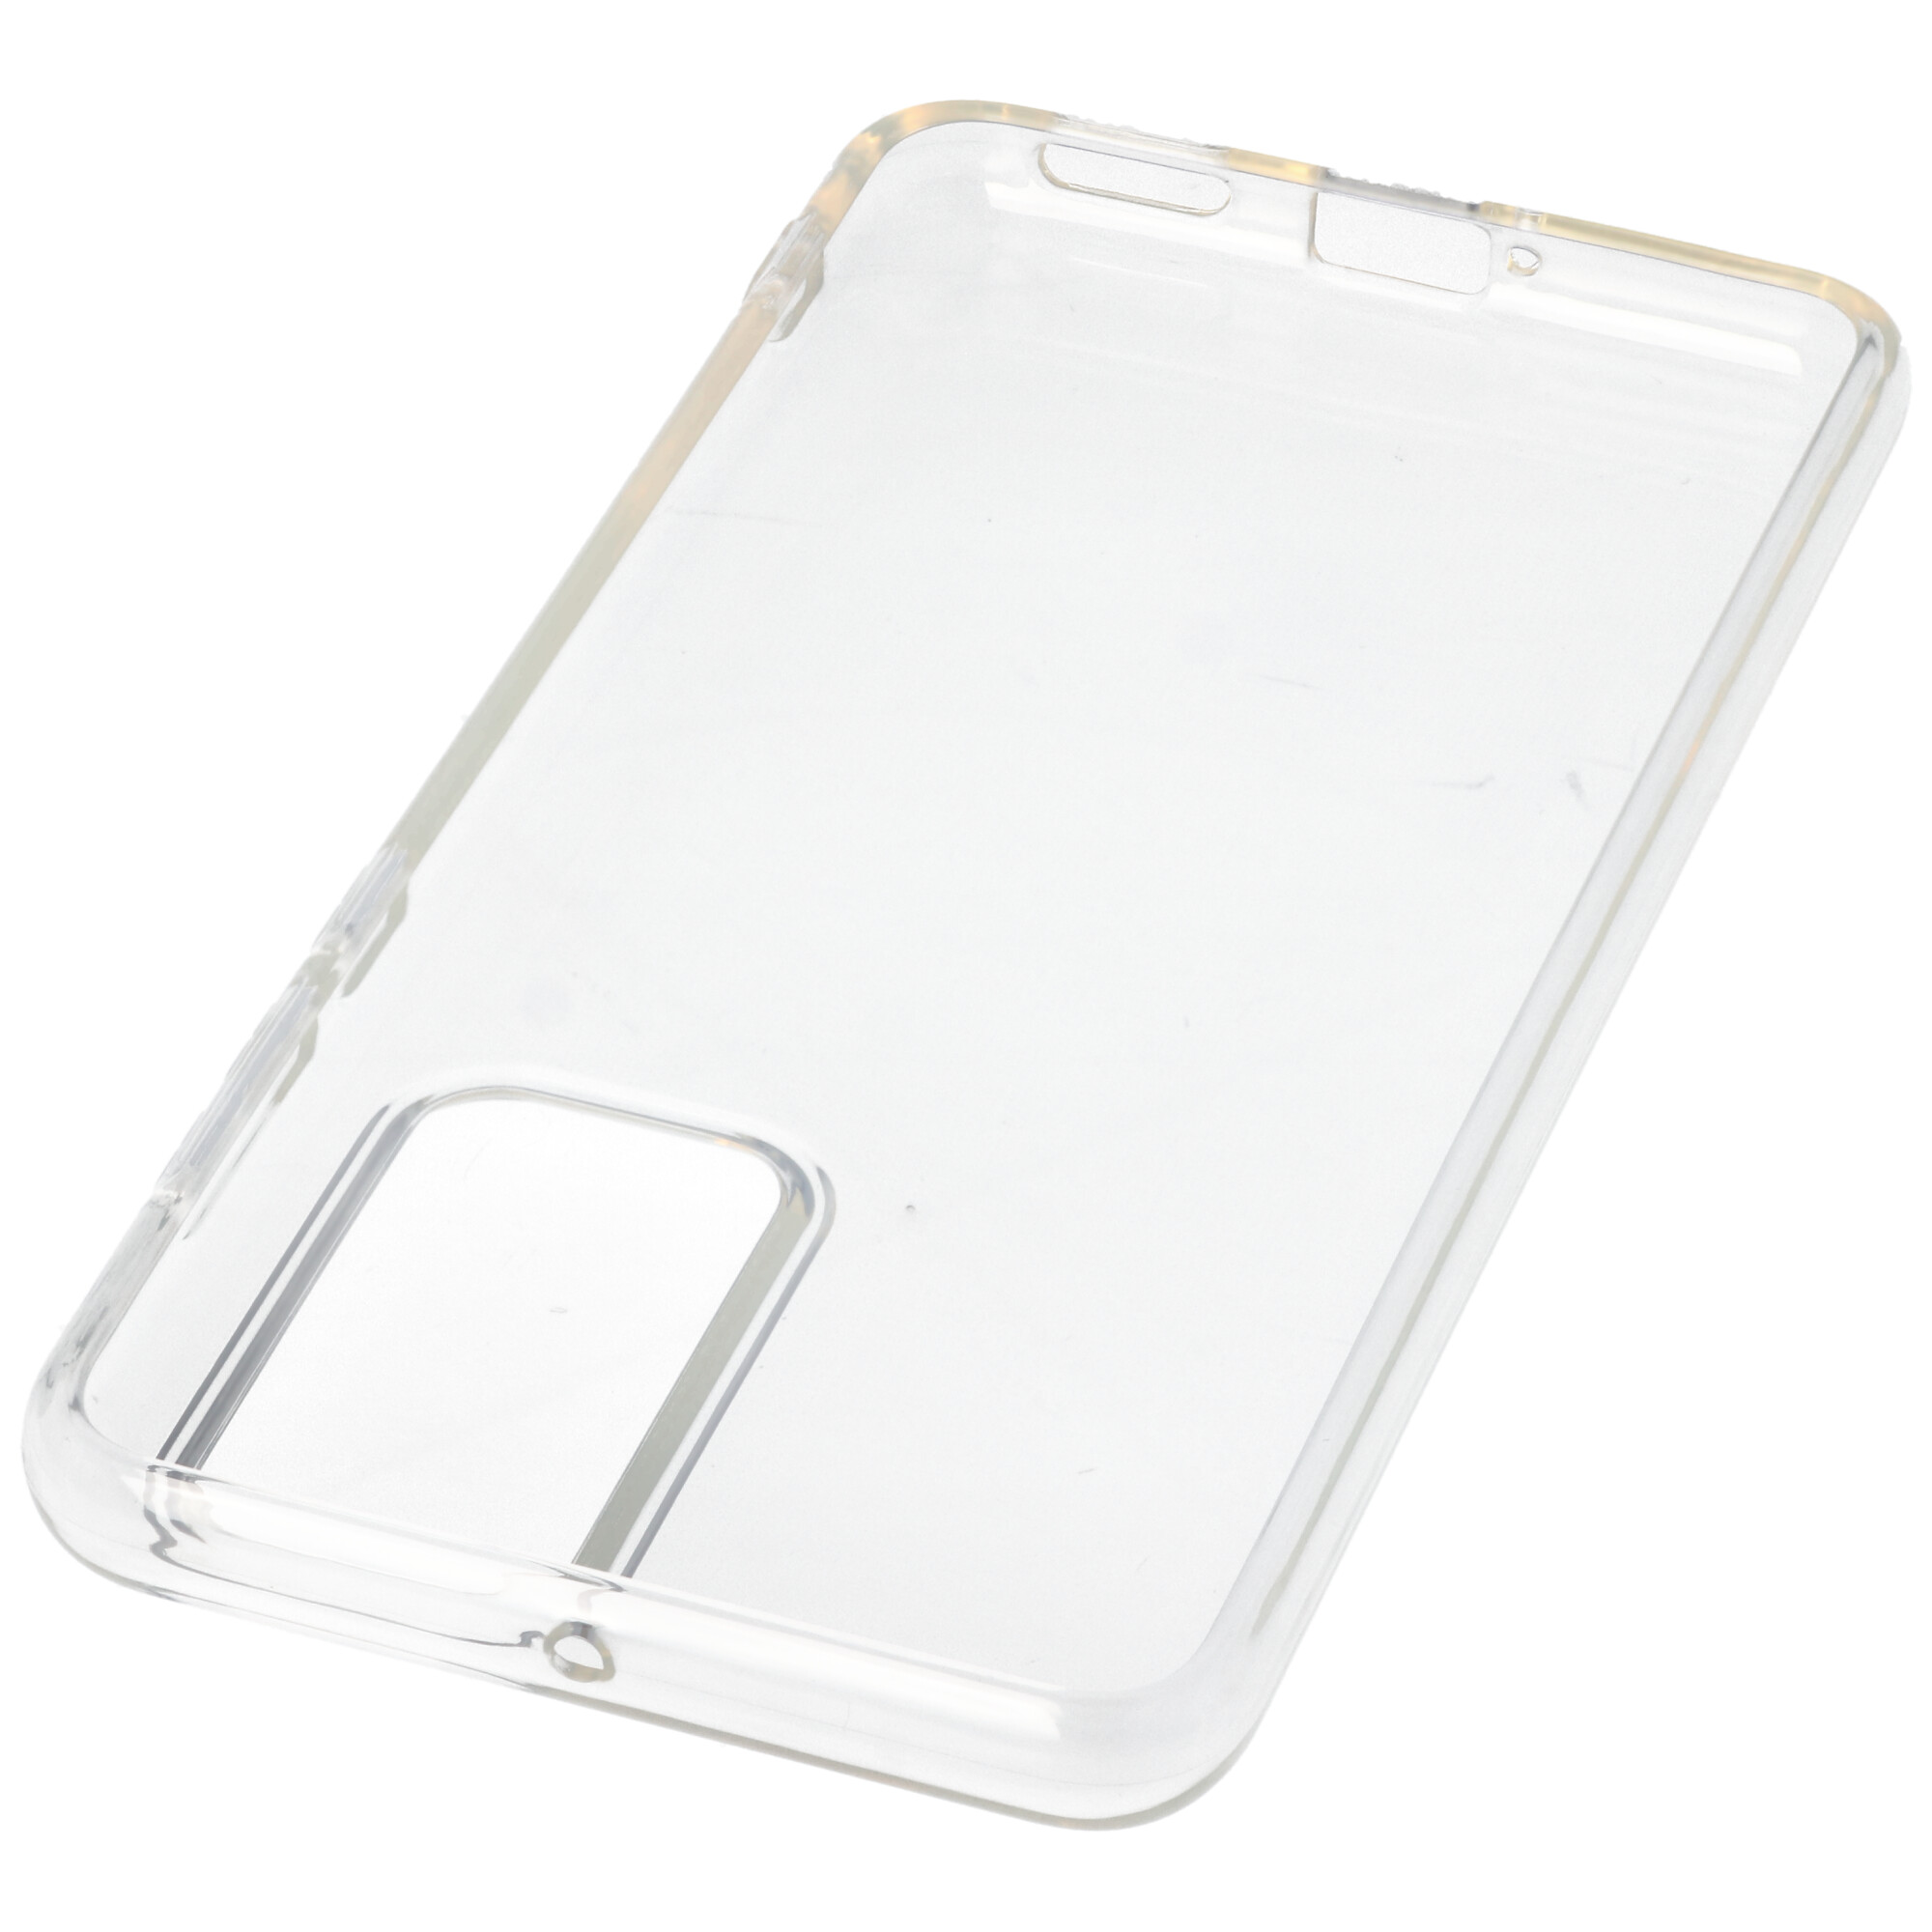 Hülle passend für Huawei P40 - transparente Schutzhülle, Anti-Gelb Luftkissen Fallschutz Silikon Handyhülle robustes TPU Case